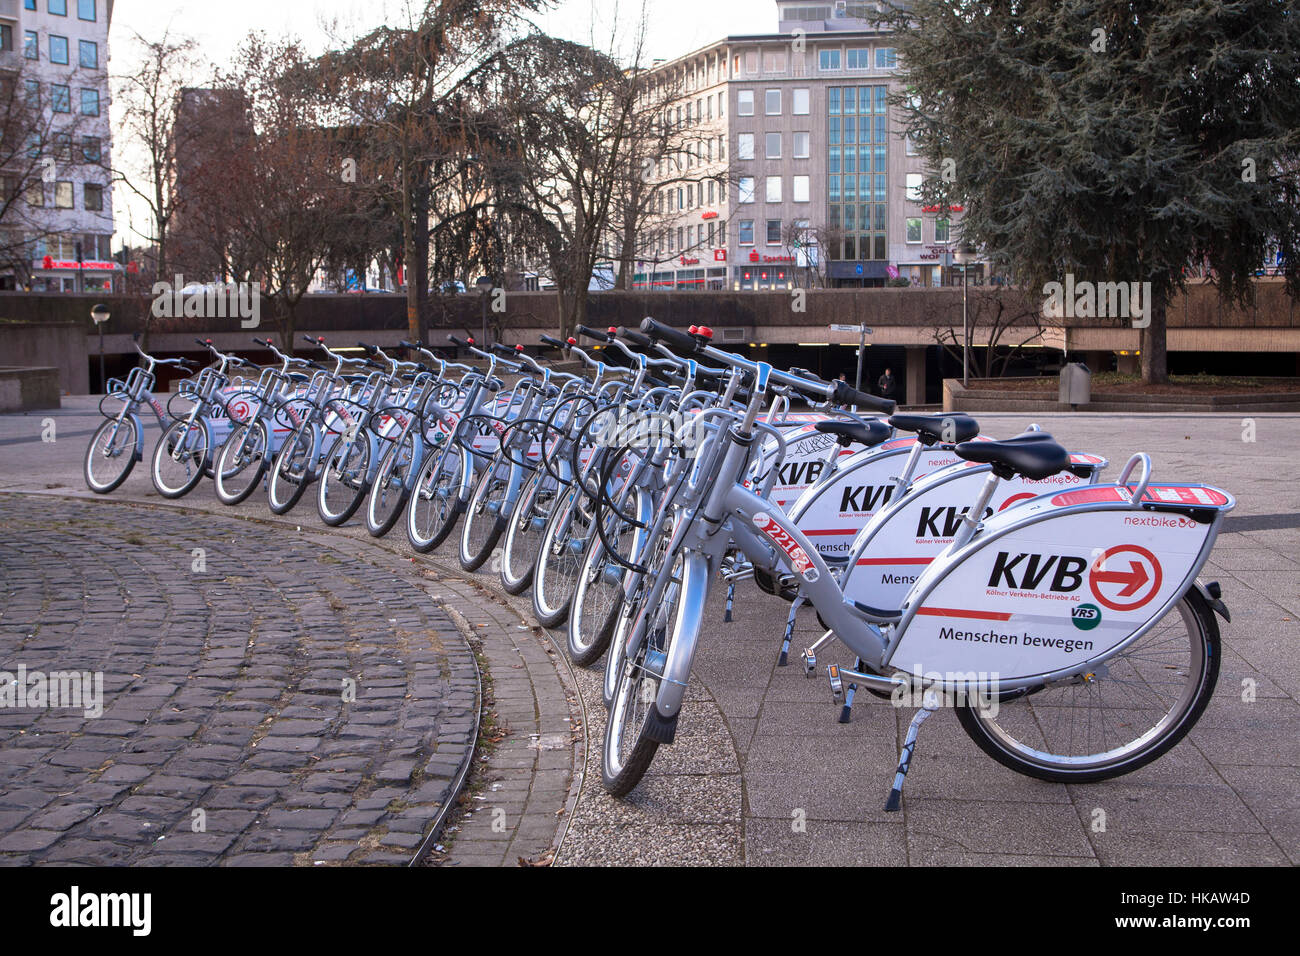 Allemagne, Cologne, un service de location de vélos de l'entreprise Koelner Verkehrsbetriebe KVB (société de transports publics de Cologne) Banque D'Images